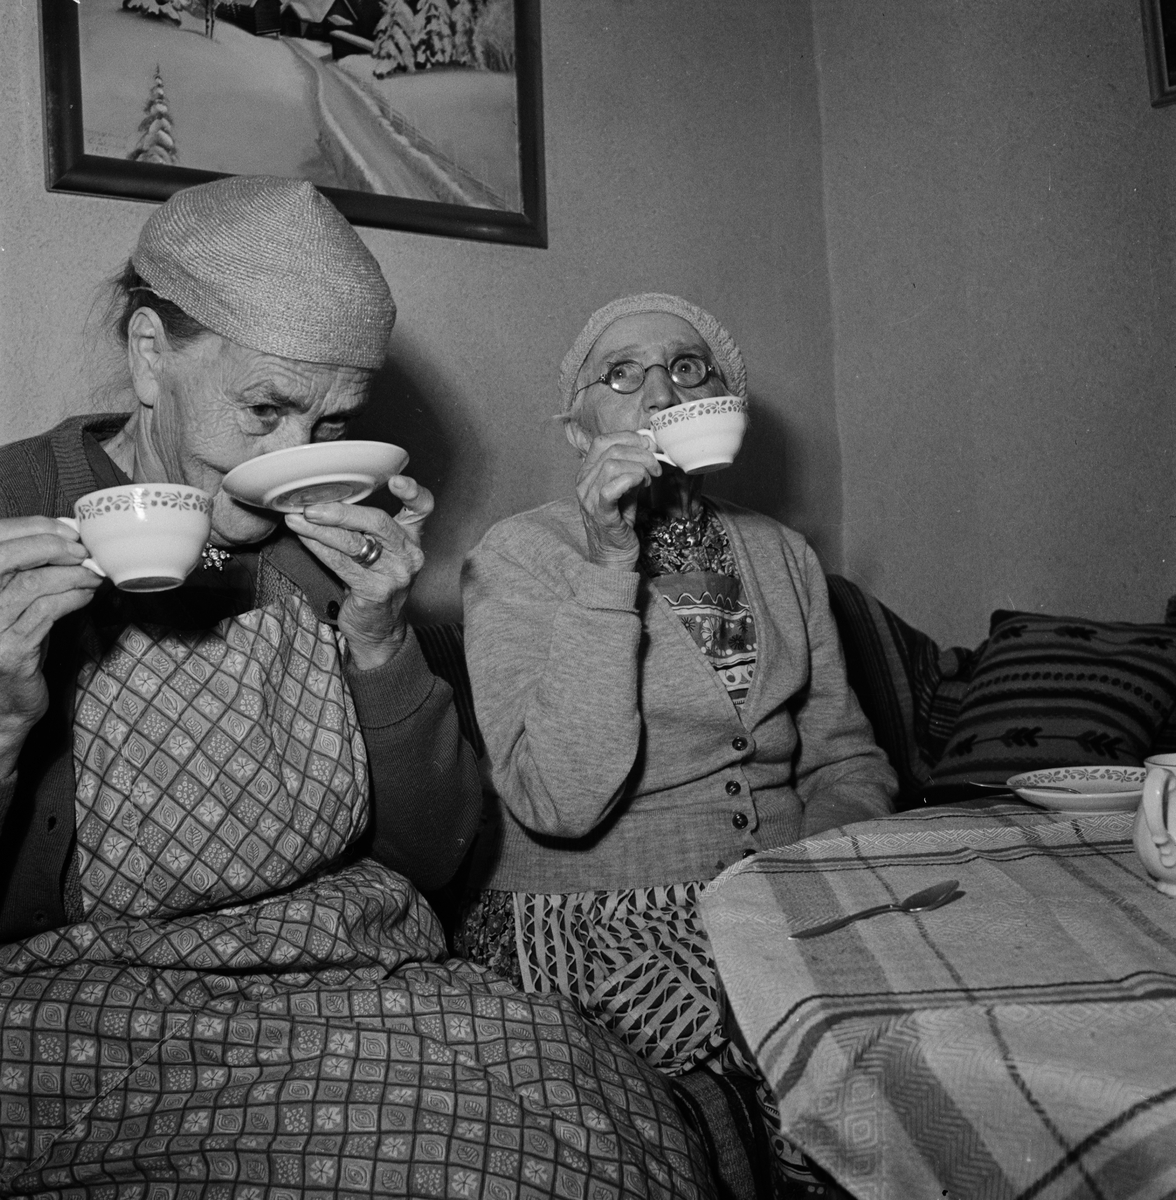 ”Kaffetåren den bästa är” Tycker Emma Jansson och Anna
Eriksson på Knutby ålderdomshem 1953, som av Upsala Nya
Tidning beskrevs som ”en lantlig idyll i dur”.
Ålderdomshemmet var inrymt i en f.d. bondgård i Gränsta
och hade ett ”idylliskt läge mitt i byn””. Hemmet hade 13
boende. ”Det höjer humöret om ingen är sängliggande”
tyckte föreståndarinnan syster Britta Jonsson.
Besök och småsysslor bidrog till att få dagarna att gå
lite fortare. De gamla hjälpte bland annat till med
posthämtning, vedhämtning och krattning av gårdsplanen.